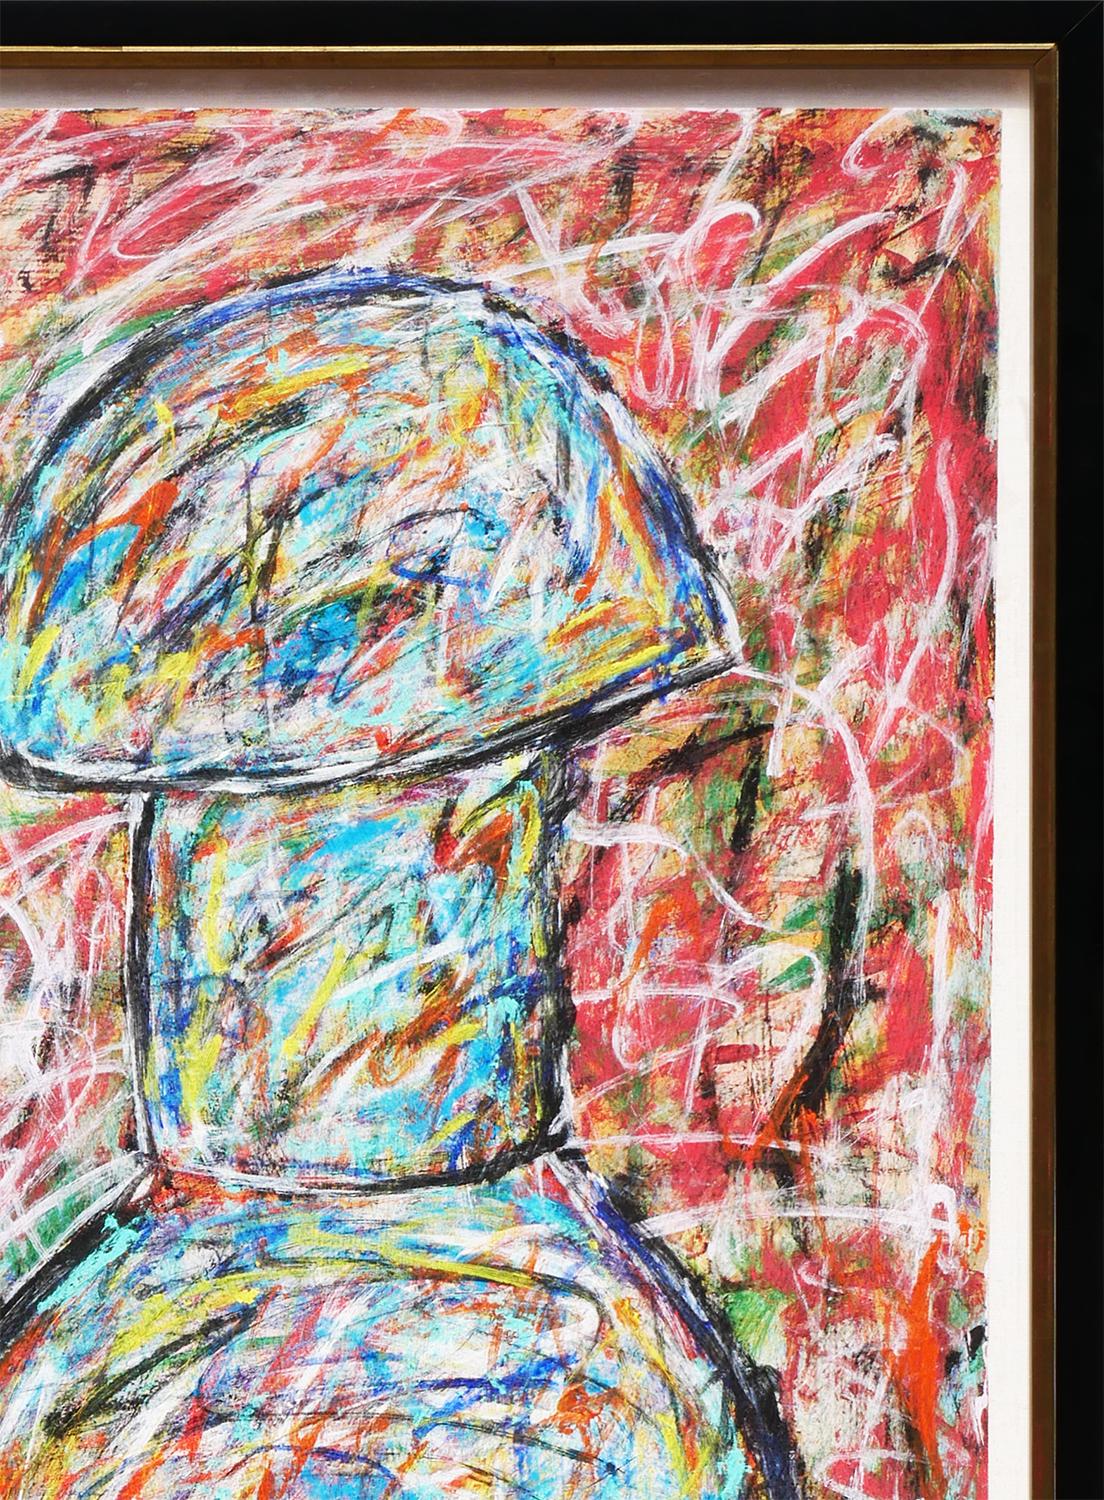 Modernes abstraktes expressionistisches Gemälde des Künstlers James Bettison aus Houston, TX. Das Werk zeigt in der Mitte eine lockere Darstellung einer blauen und gelben Vase oder eines Gefäßes vor einem rot gefärbten Hintergrund. Derzeit in einem